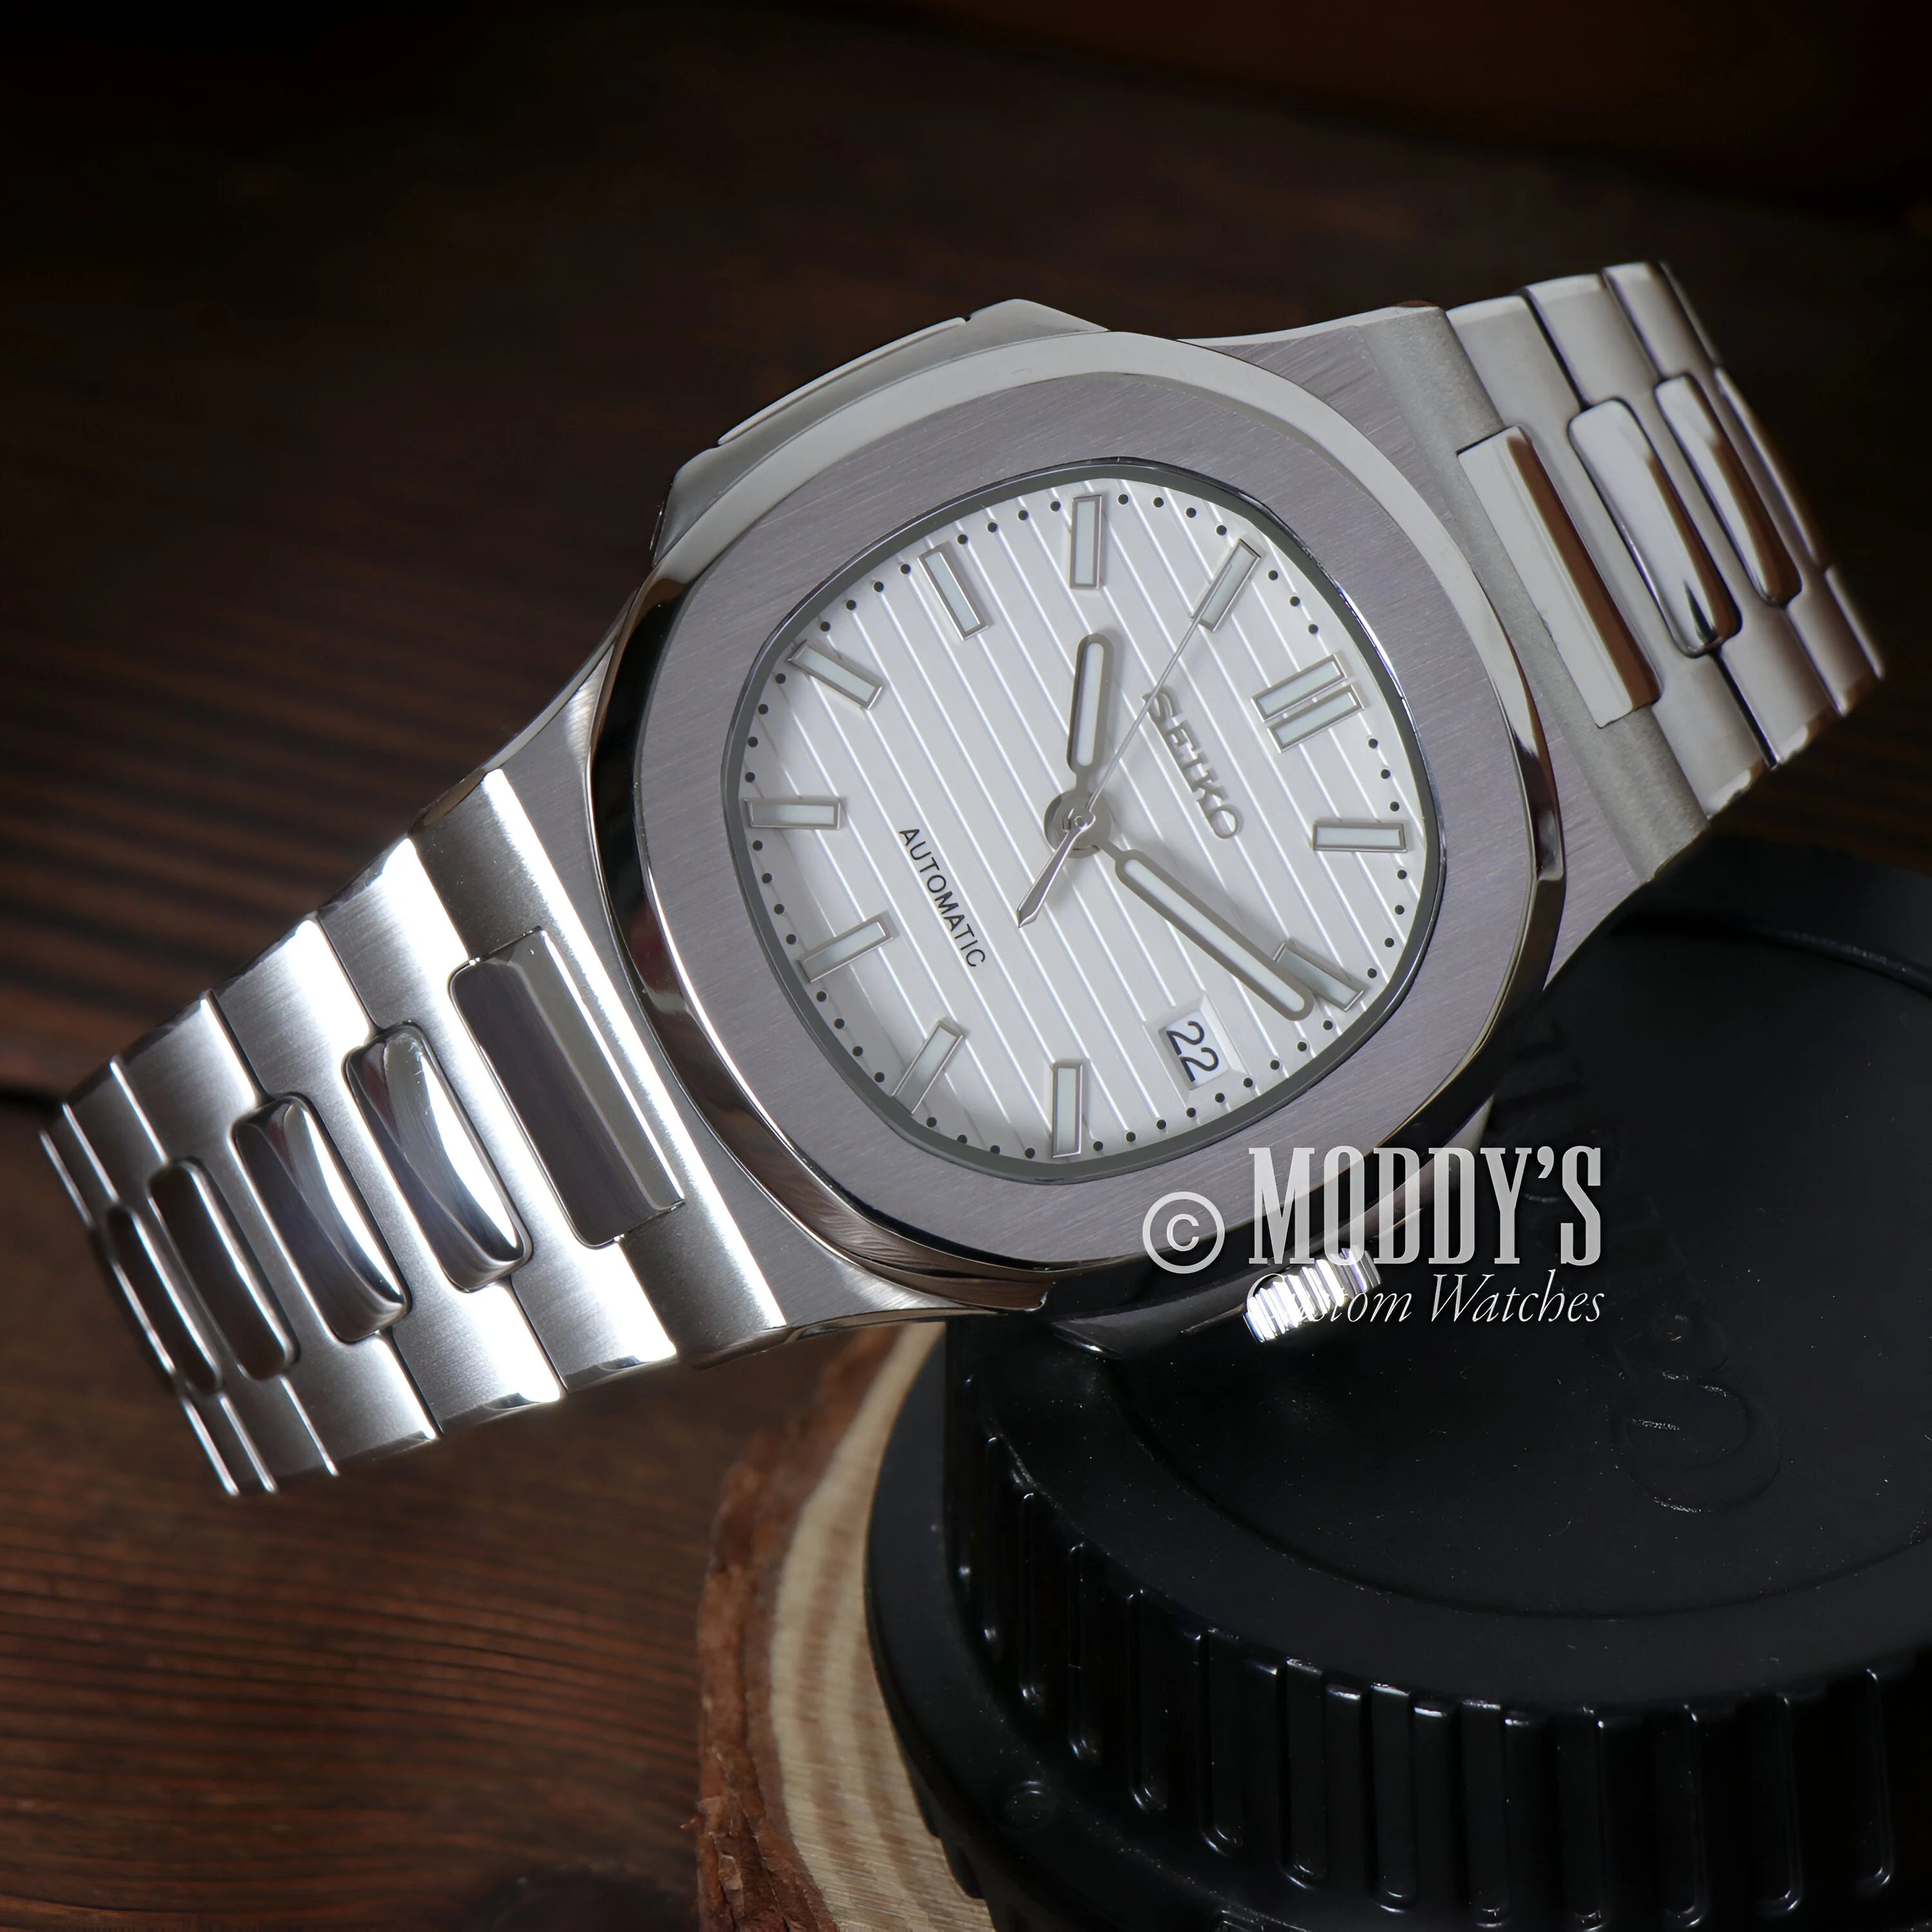 Nautiko White Silver Luxury Wristwatch With Round Face And Metal Bracelet In Nautilus Case